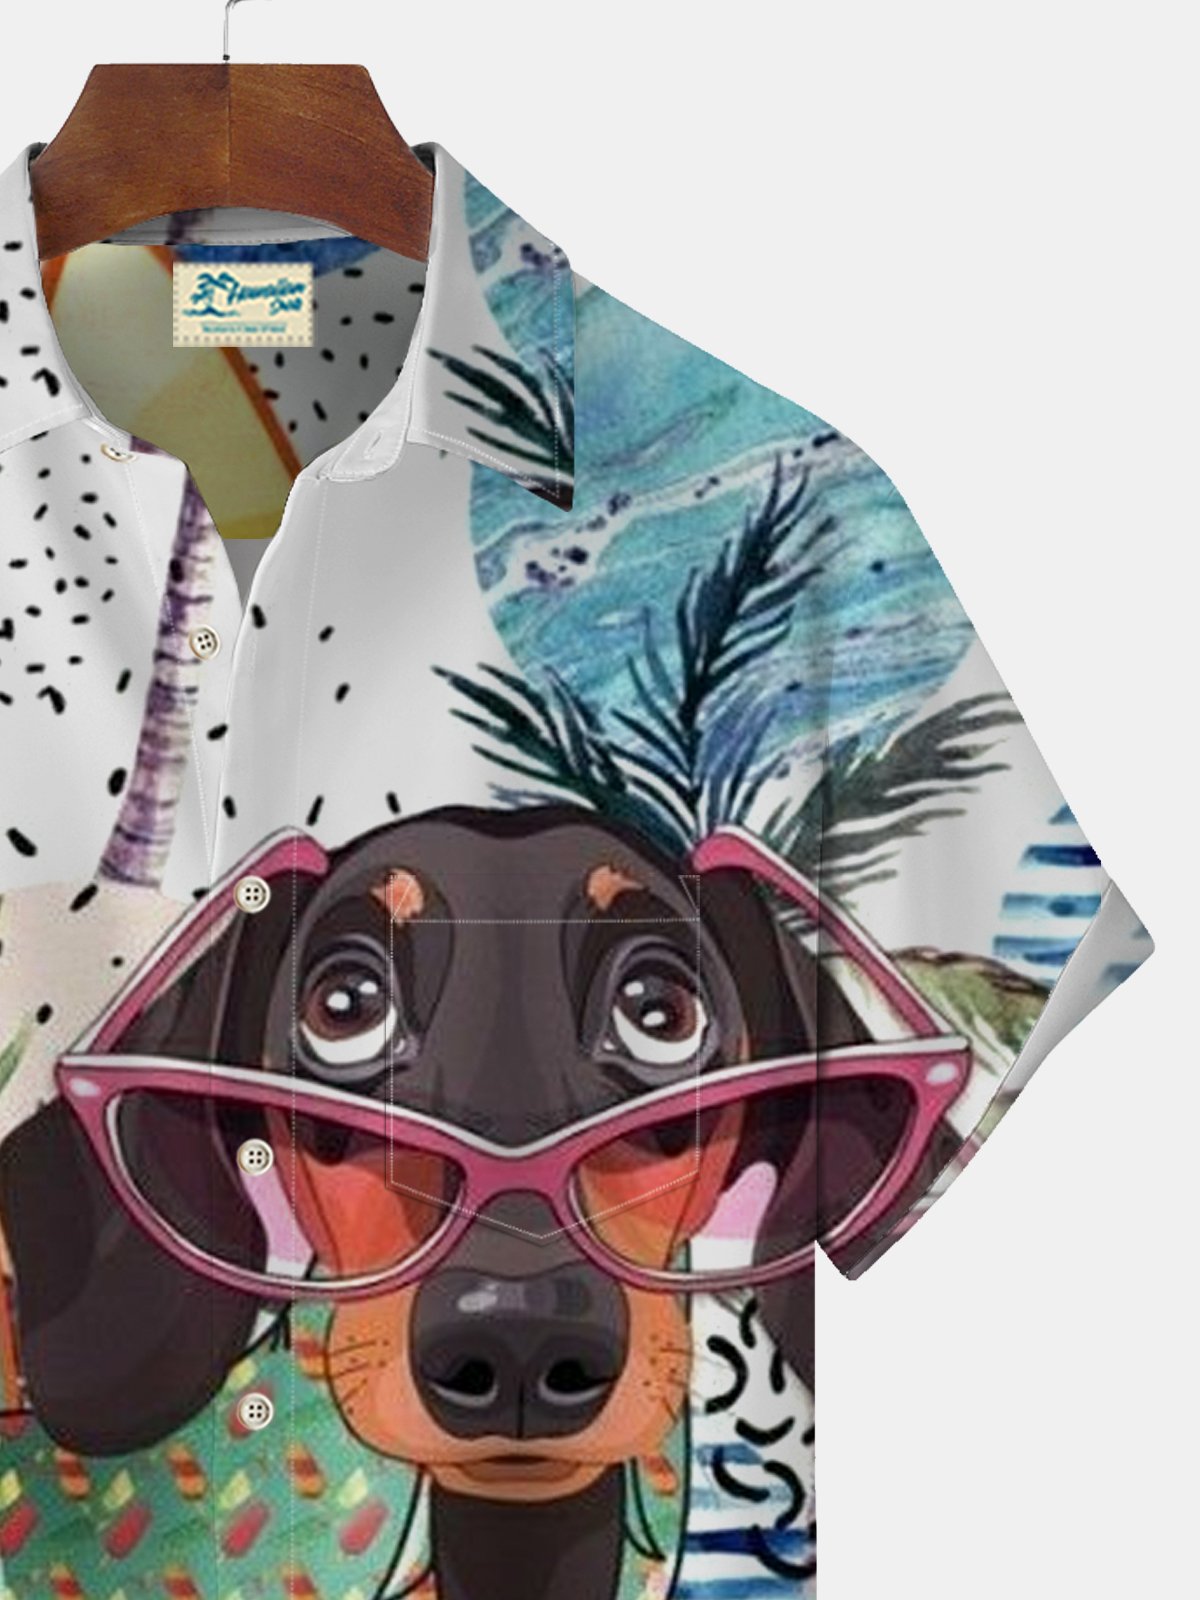 JoyMitty Funny Cute Dog Print Beach Men's Hawaiian Oversized Shirt With Pocket